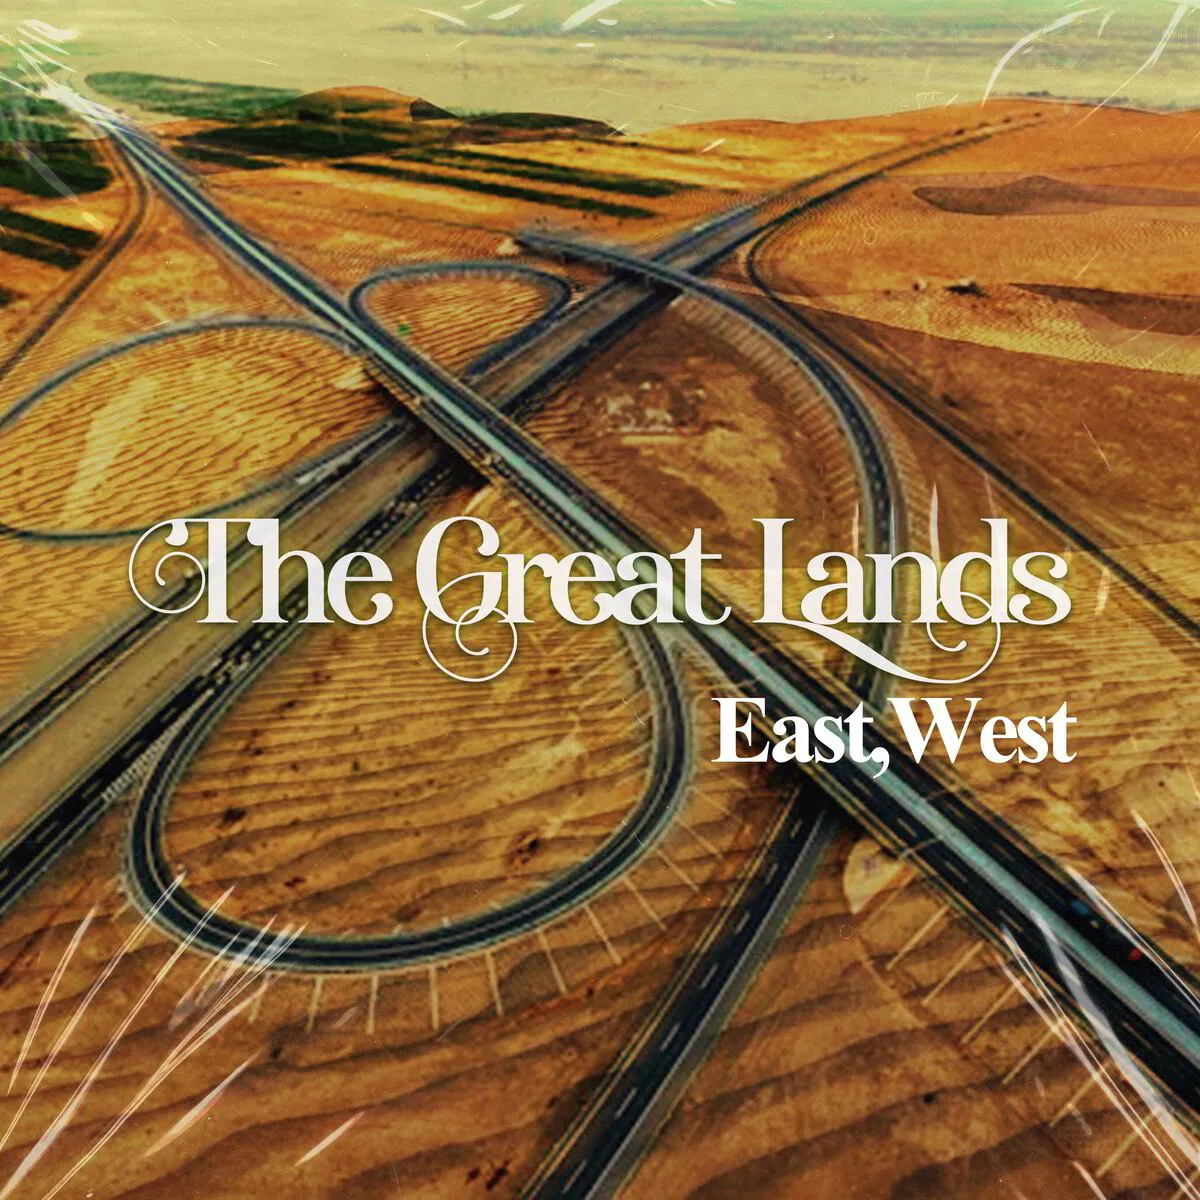 East,West Digital EP (5 Songs)